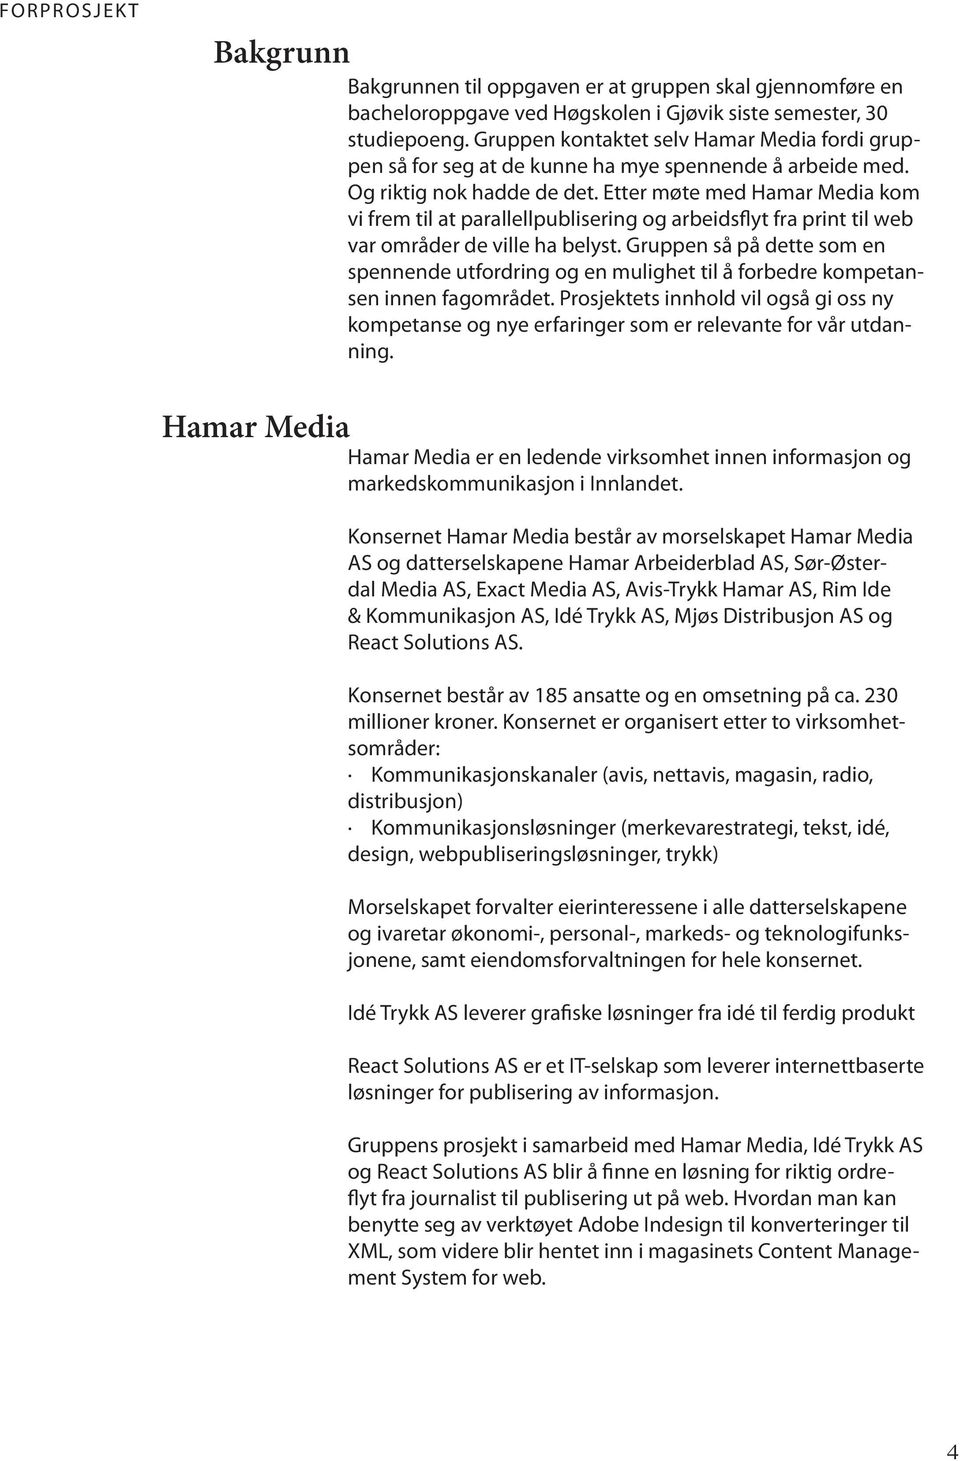 Etter møte med Hamar Media kom vi frem til at parallellpublisering og arbeidsflyt fra print til web var områder de ville ha belyst.